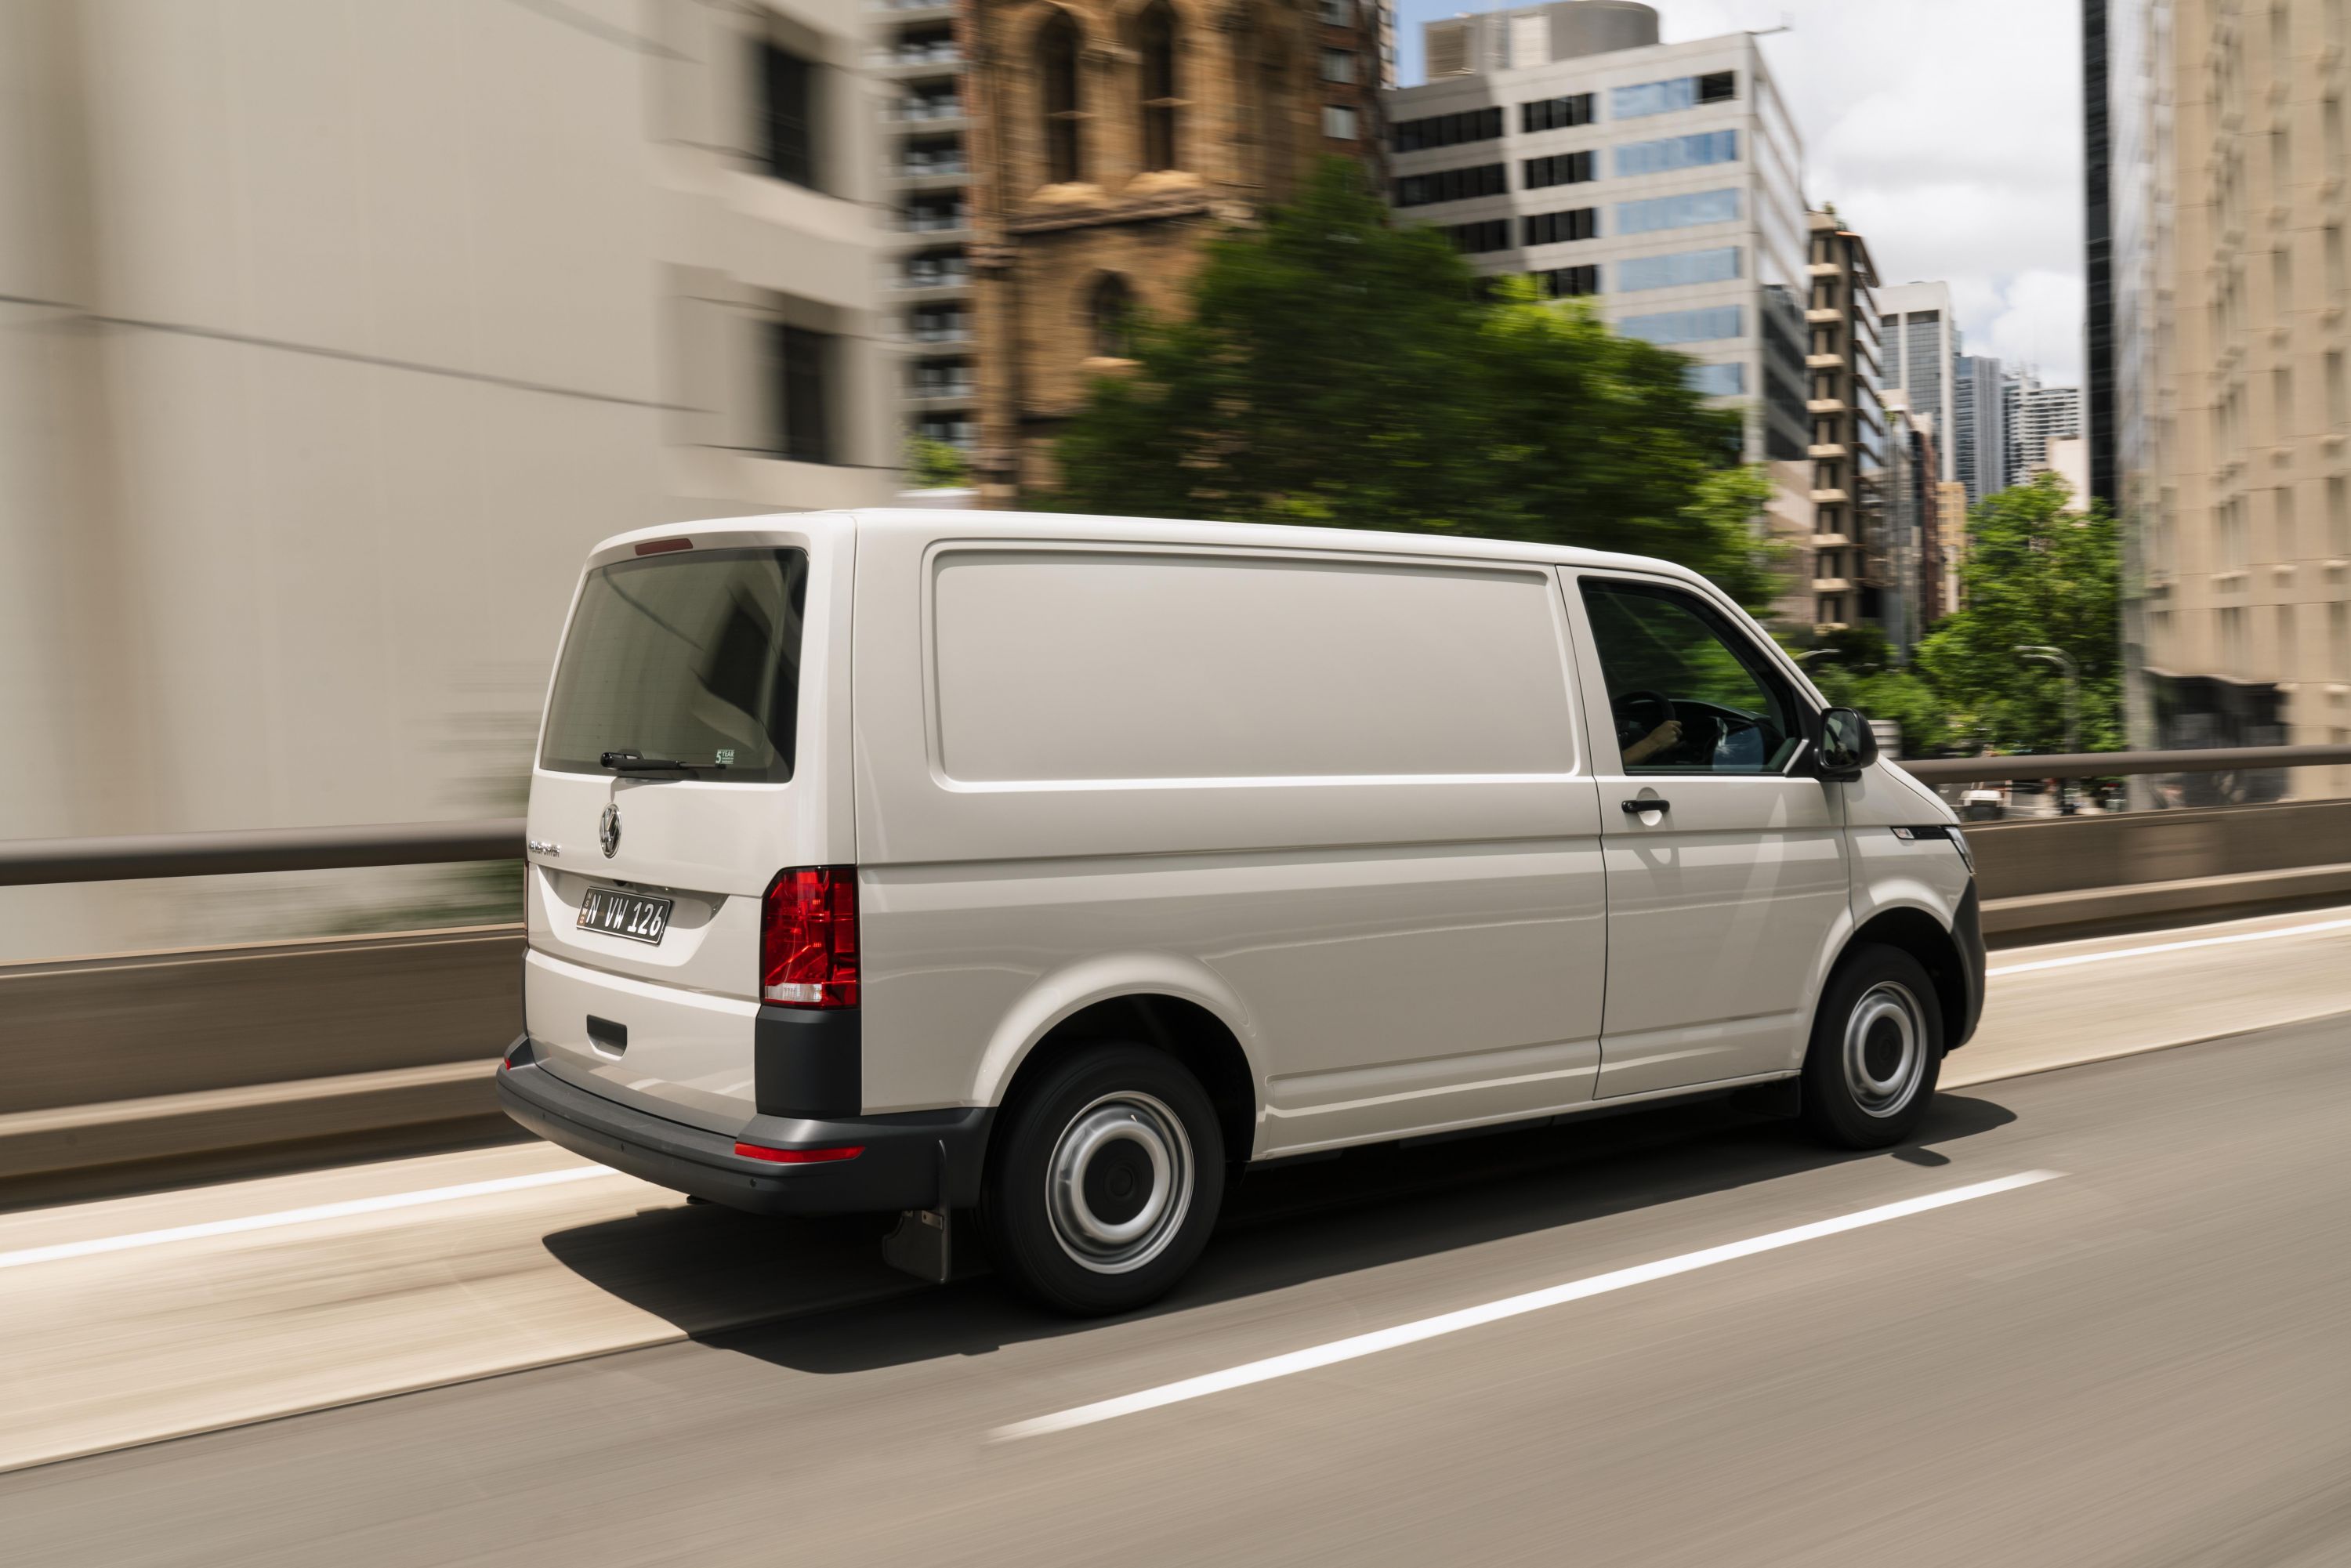 Best Medium Van: Volkswagen Transporter TDI340 Review